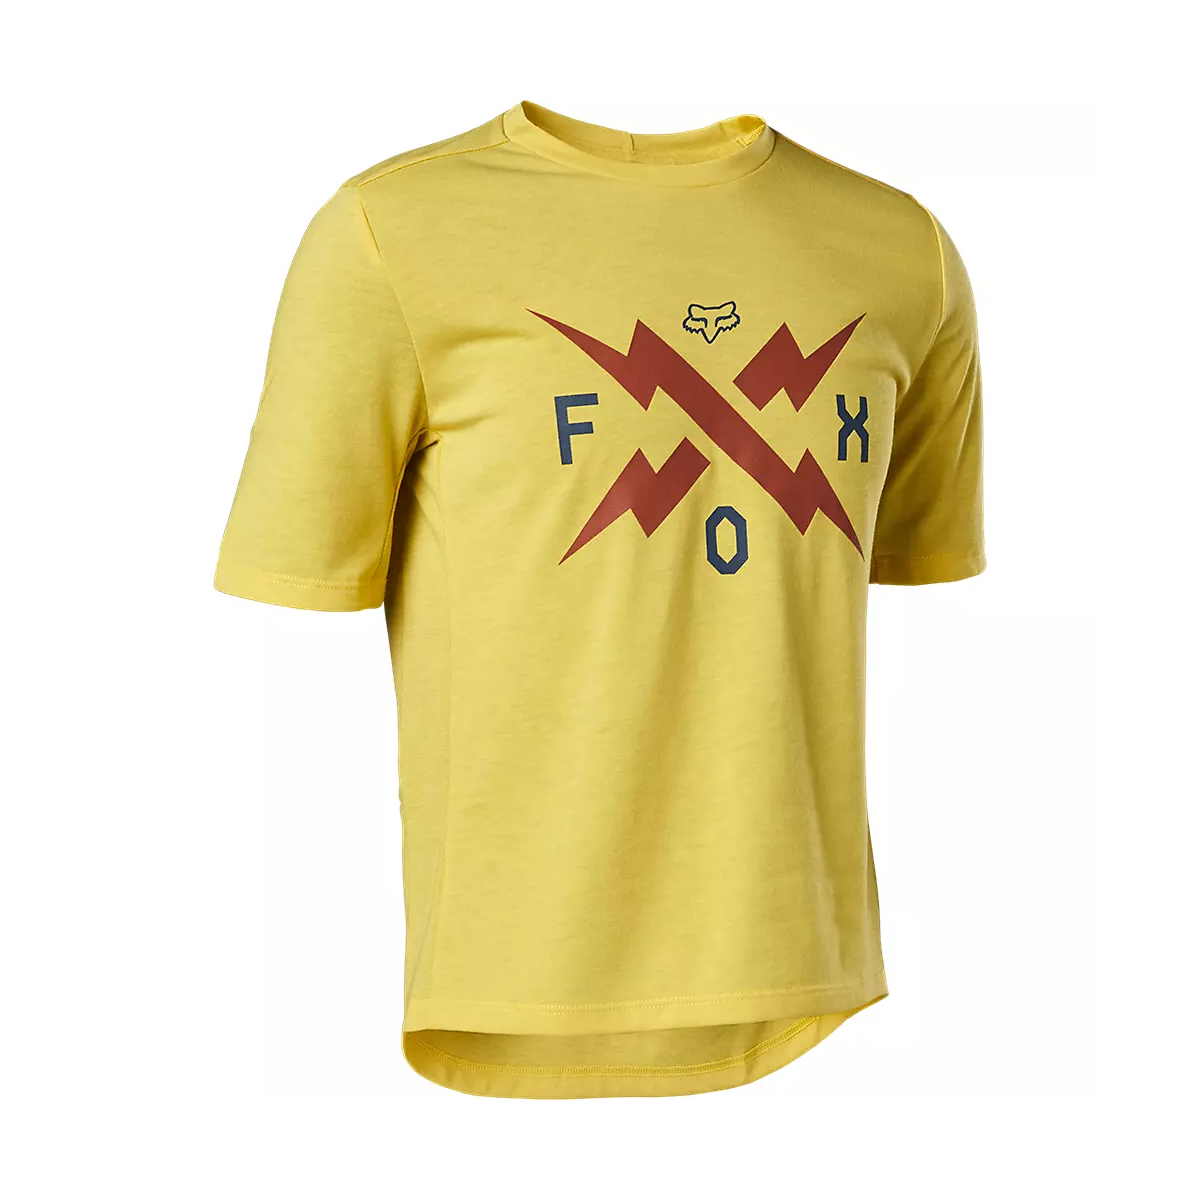 Camiseta manga corta Fox Ranger niño amarillo